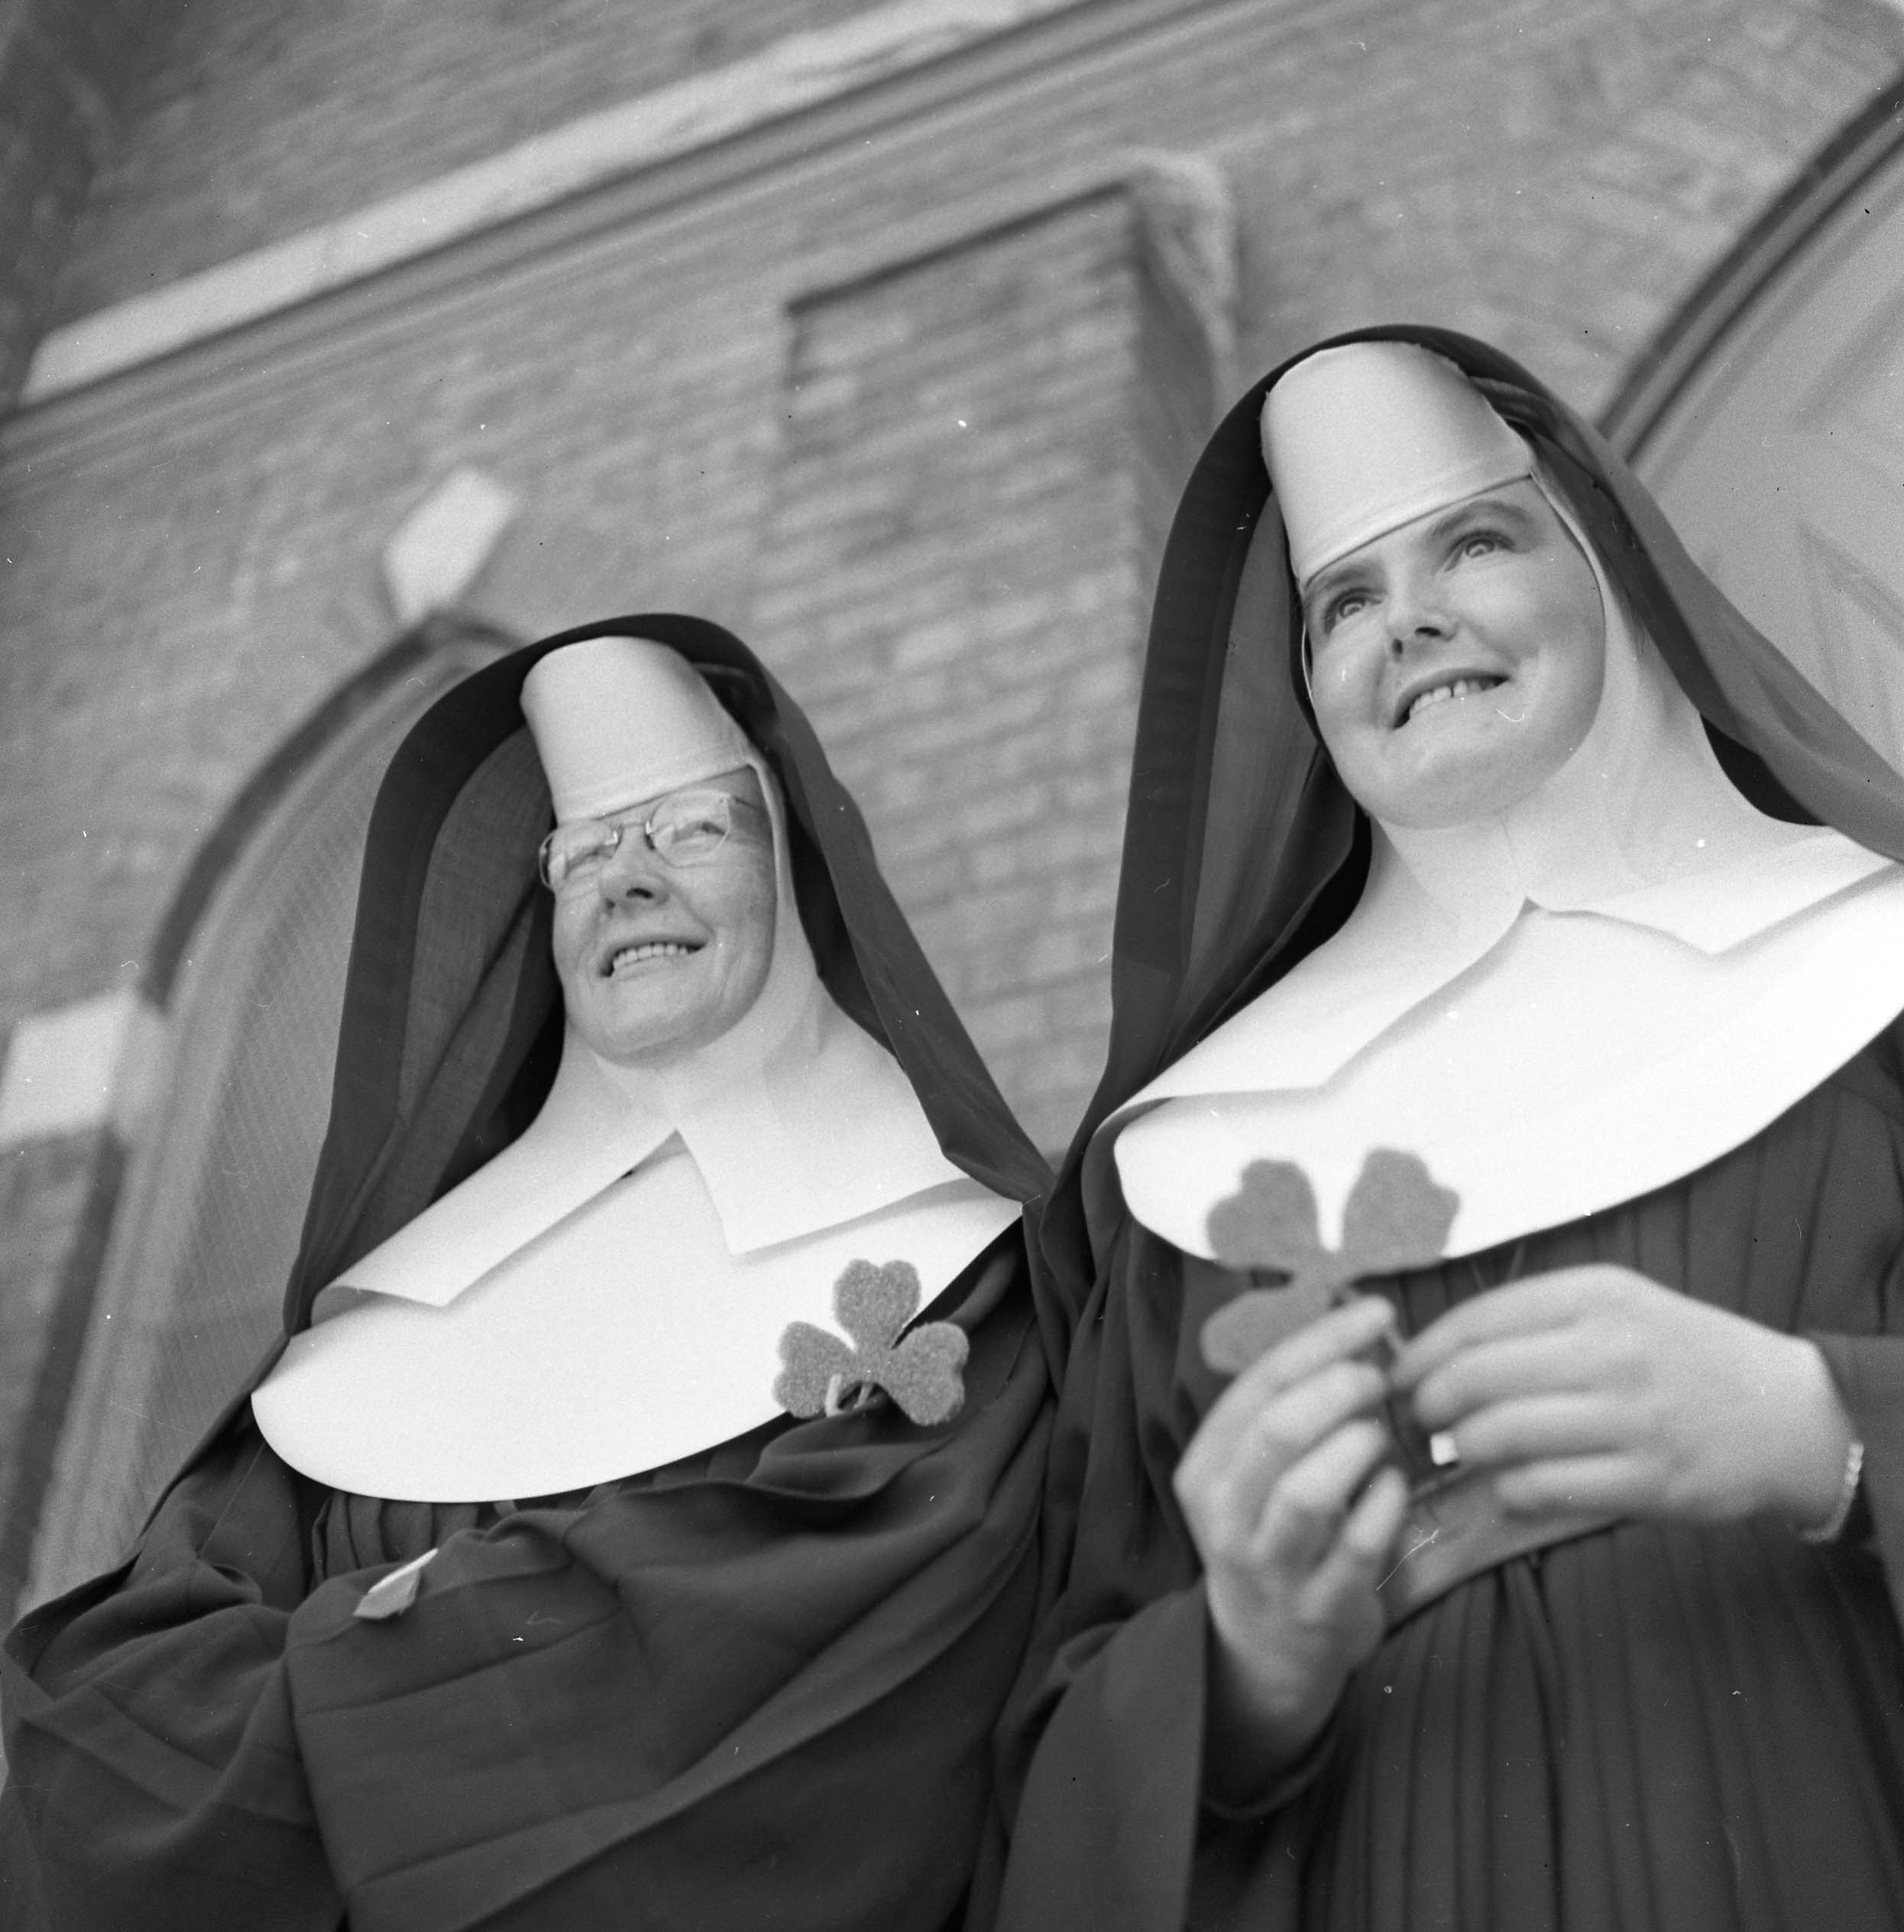 Nuns waved shamrocks in greeting